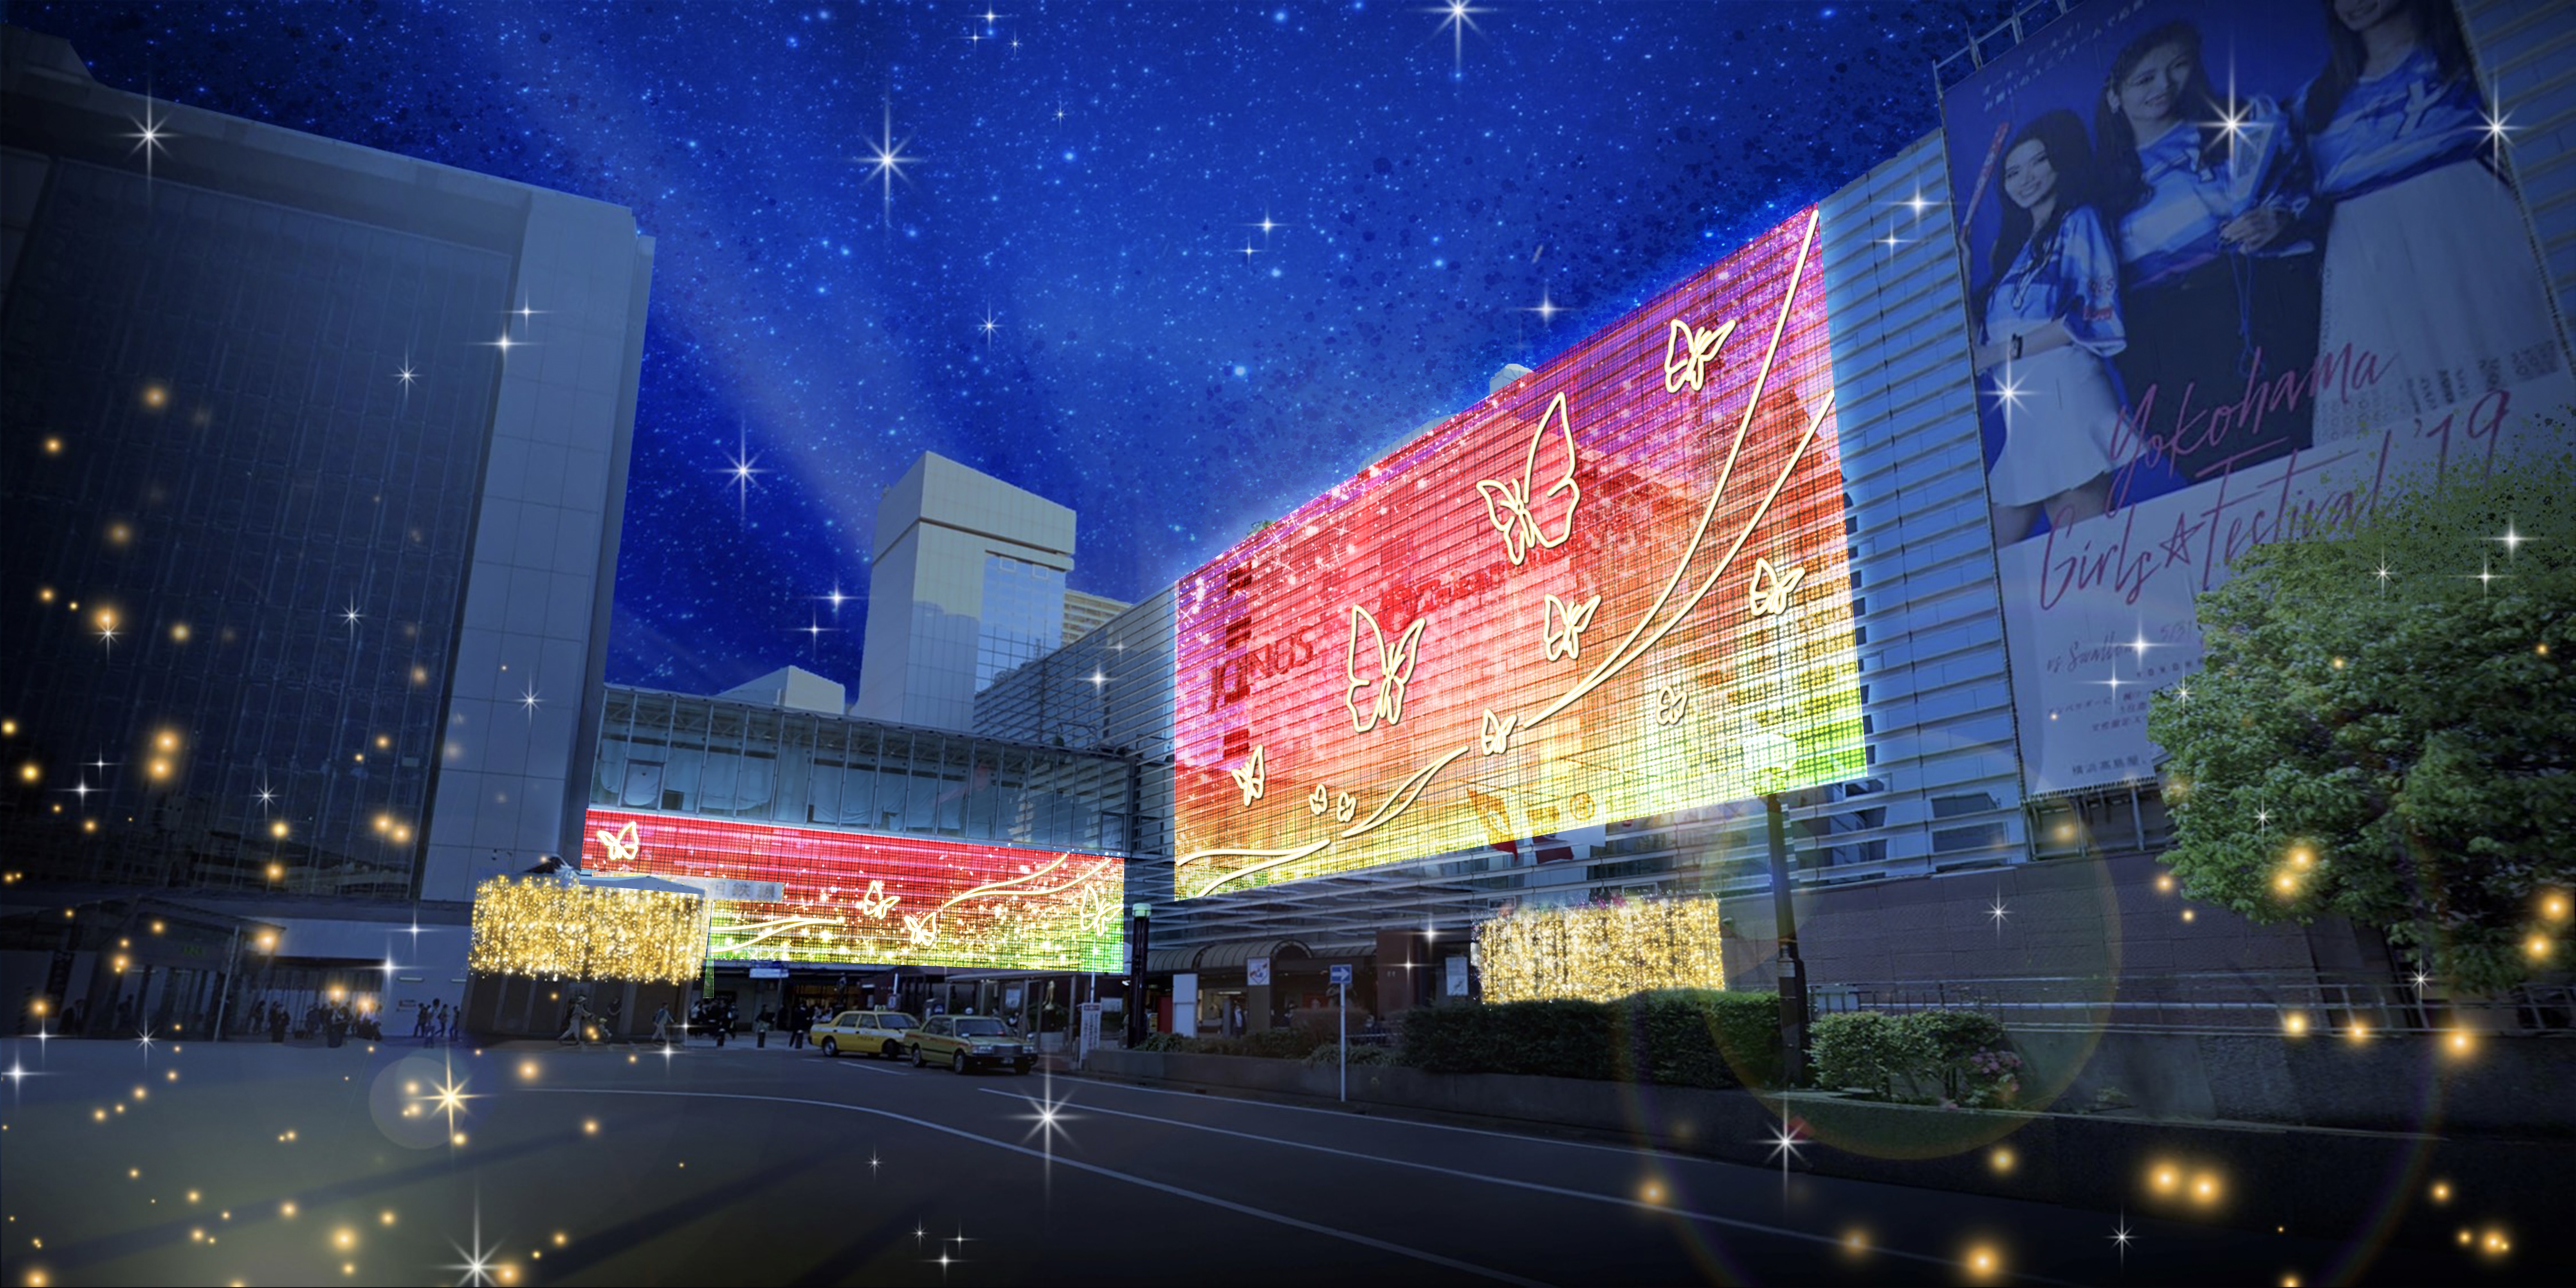 横浜駅西口エリア一帯に、多彩に輝くオーロラが出現 「ヨコハマイルミネーション2021」を開催